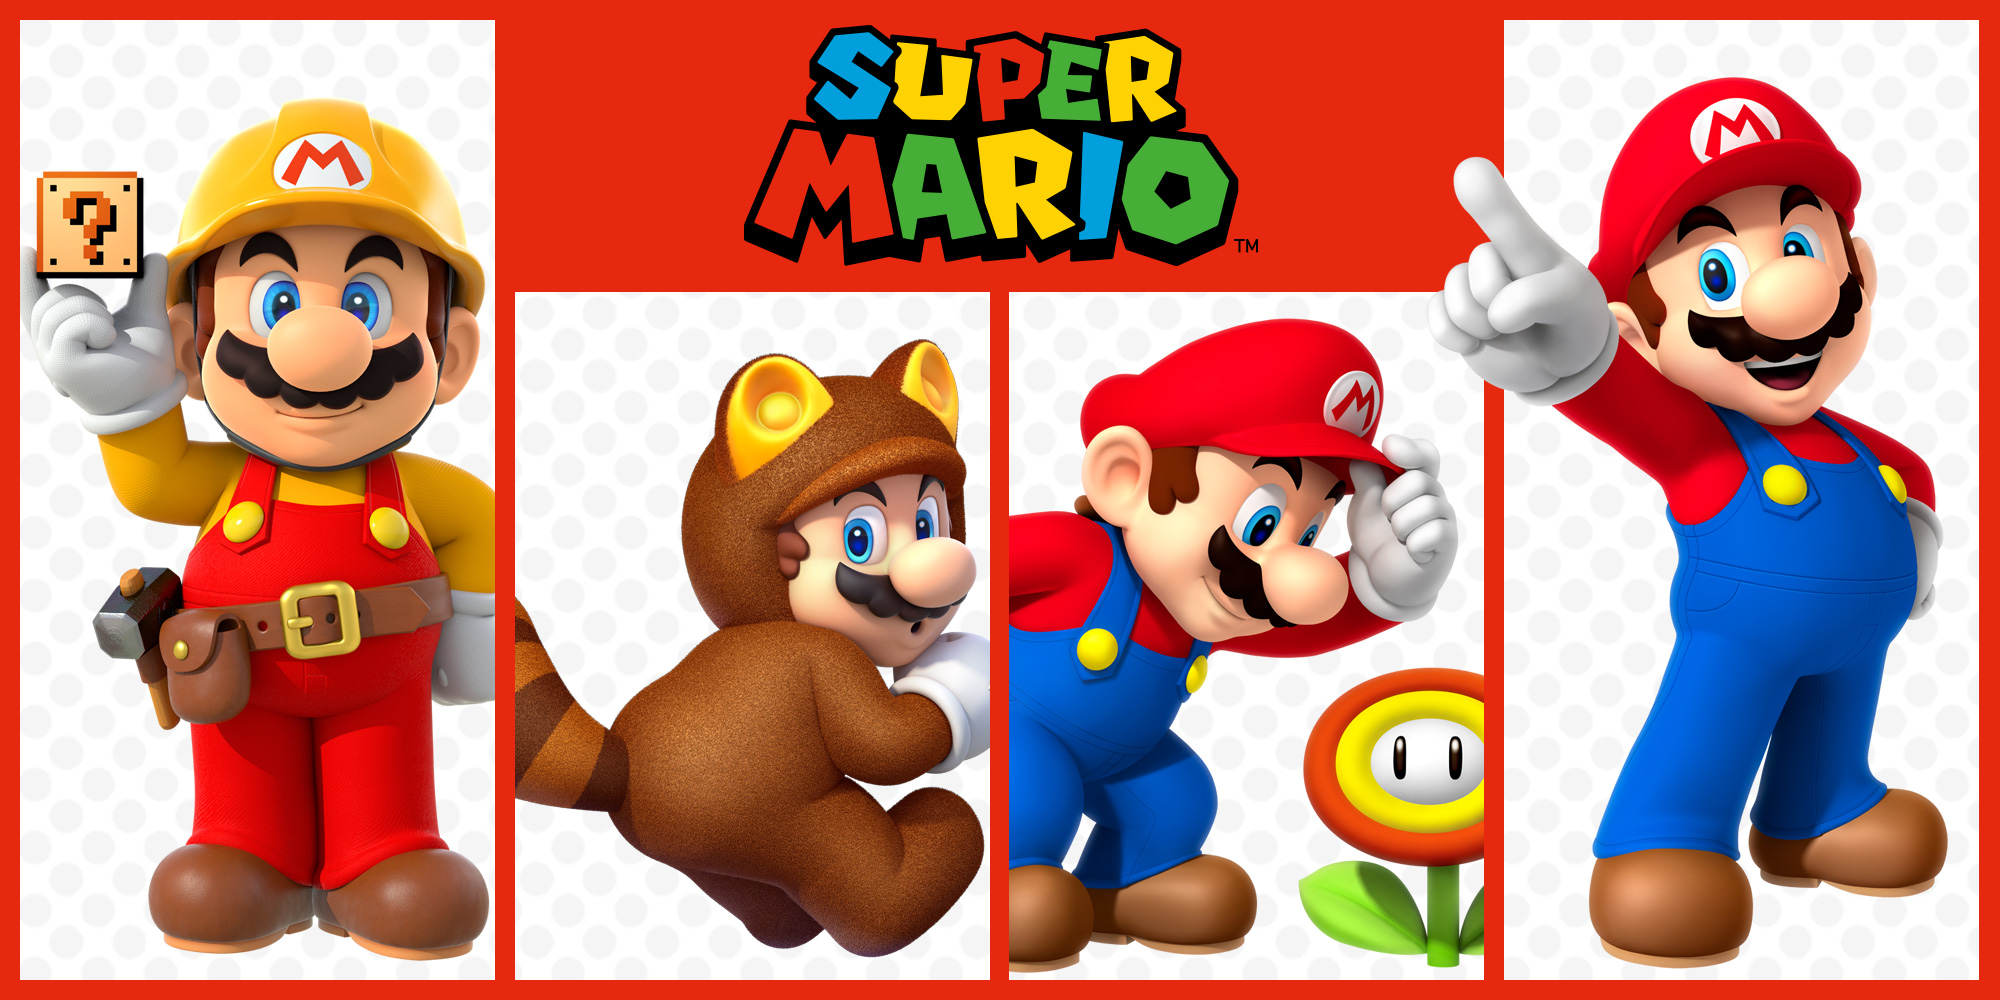 Vous voulez plus de Super Mario ? Ces jeux de plateforme devraient vous plaire !